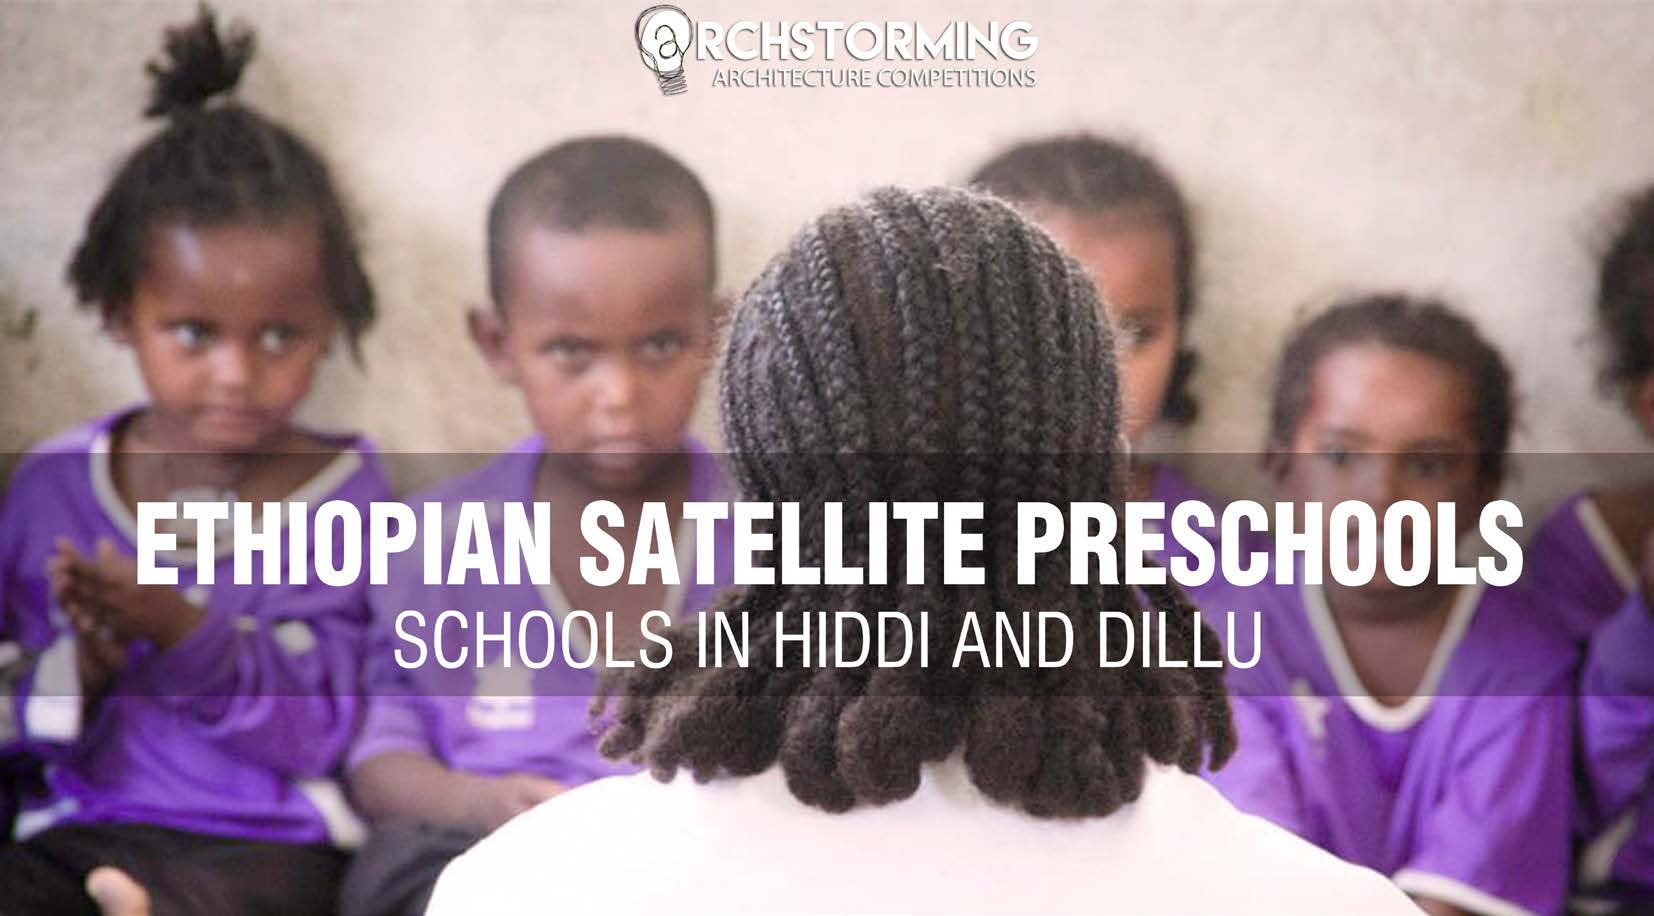 埃塞俄比亚卫星幼儿园设计竞赛